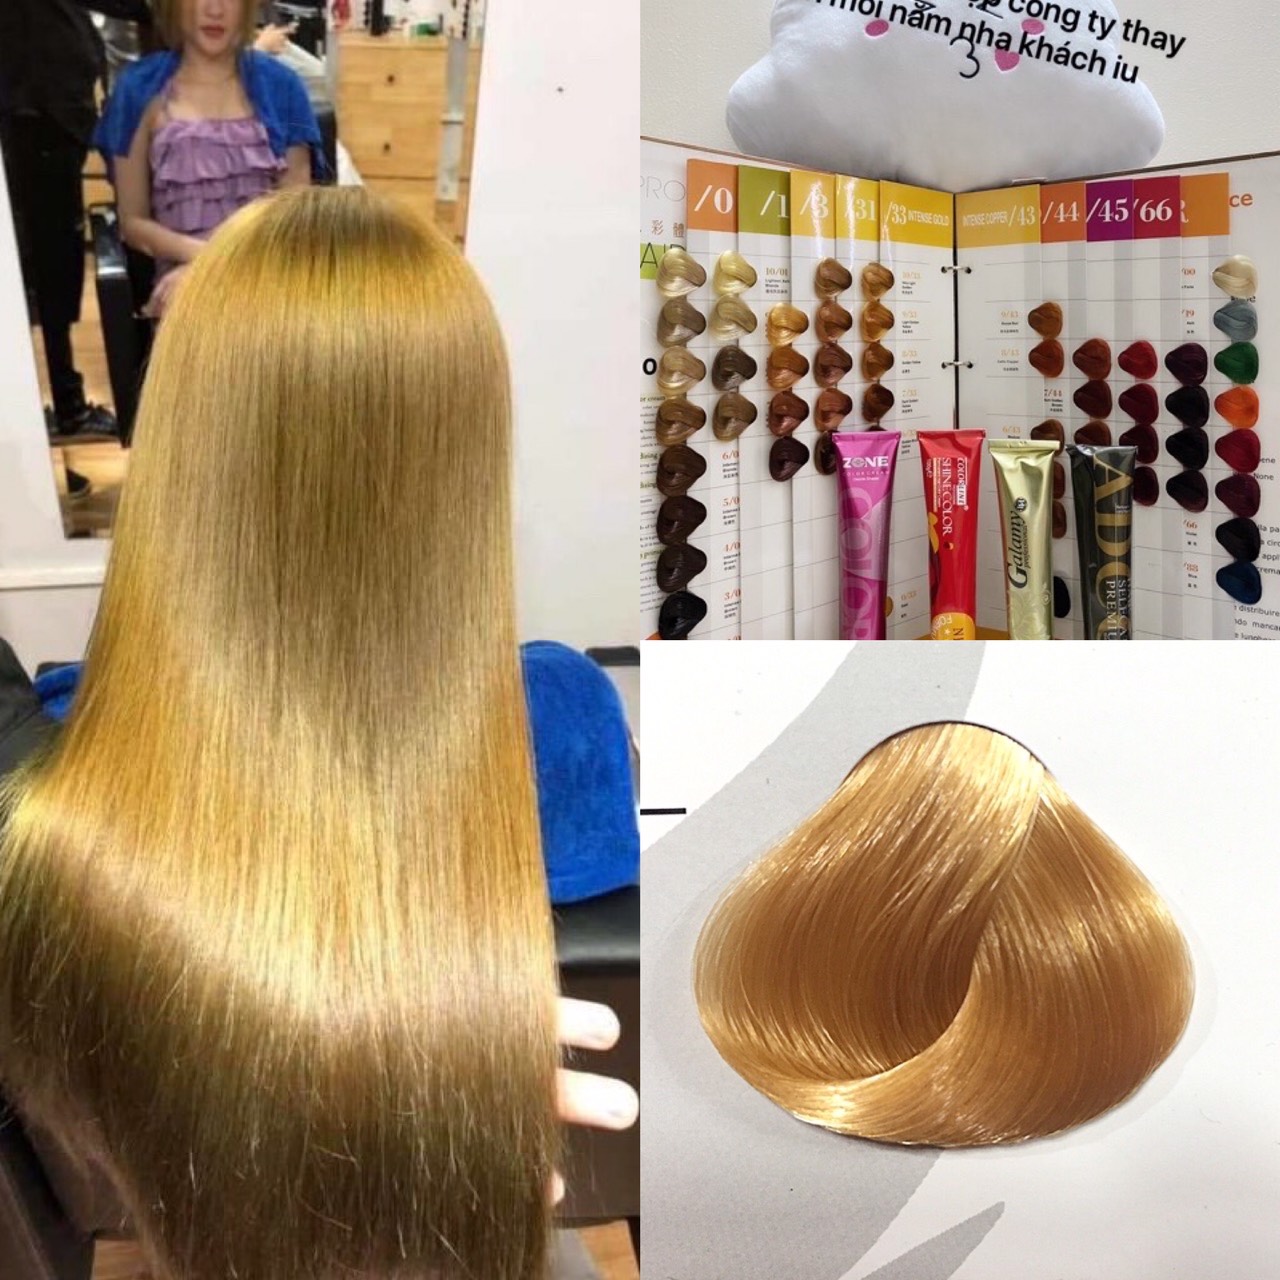 Nhuộm tóc màu Vàng Sáng Mã 9/33 9.3 là giải pháp hoàn hảo để làm mới kiểu tóc của bạn. Hình ảnh liên quan sẽ cho bạn thấy rõ ràng vẻ đẹp của màu tóc này.